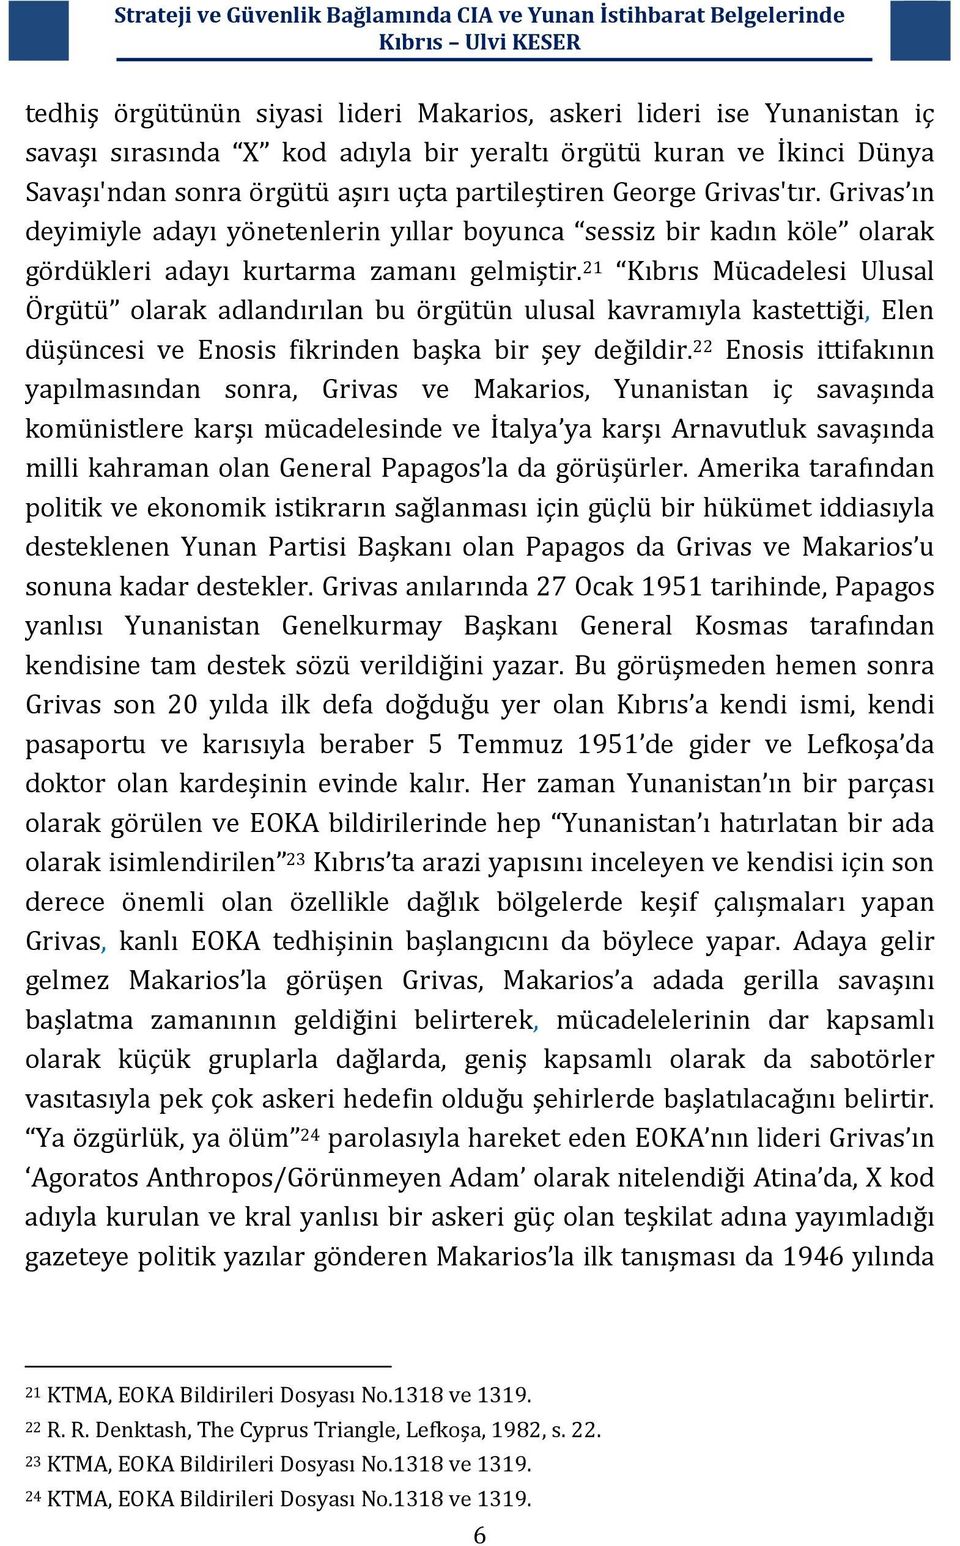 21 Kıbrıs Mücadelesi Ulusal Örgütü olarak adlandırılan bu örgütün ulusal kavramıyla kastettiği, Elen düşüncesi ve Enosis fikrinden başka bir şey değildir.